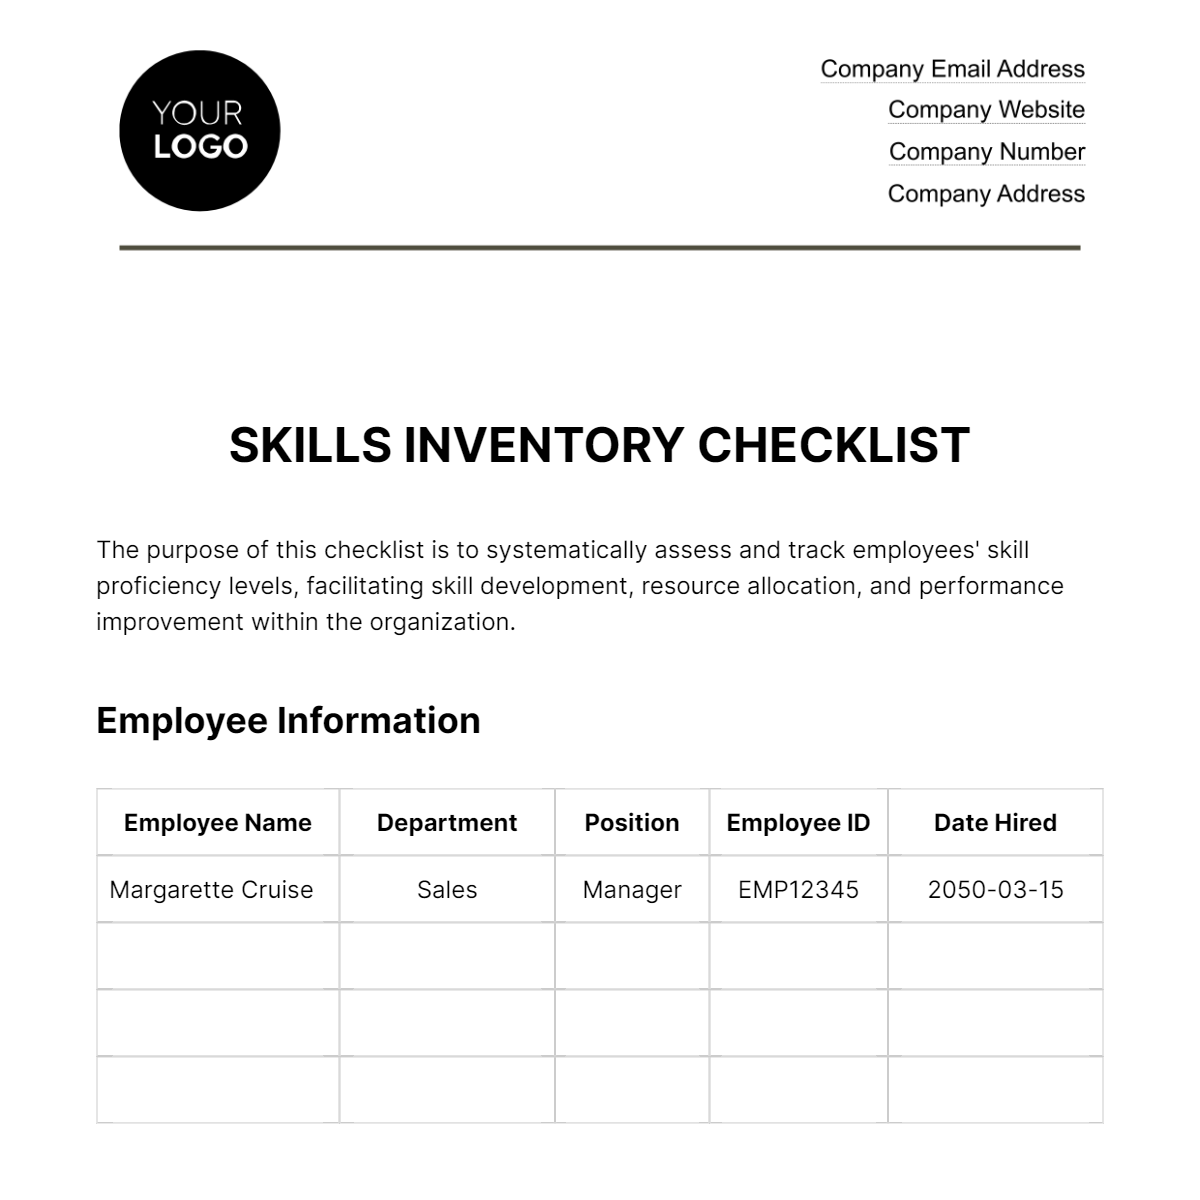 Skills Inventory Checklist HR Template